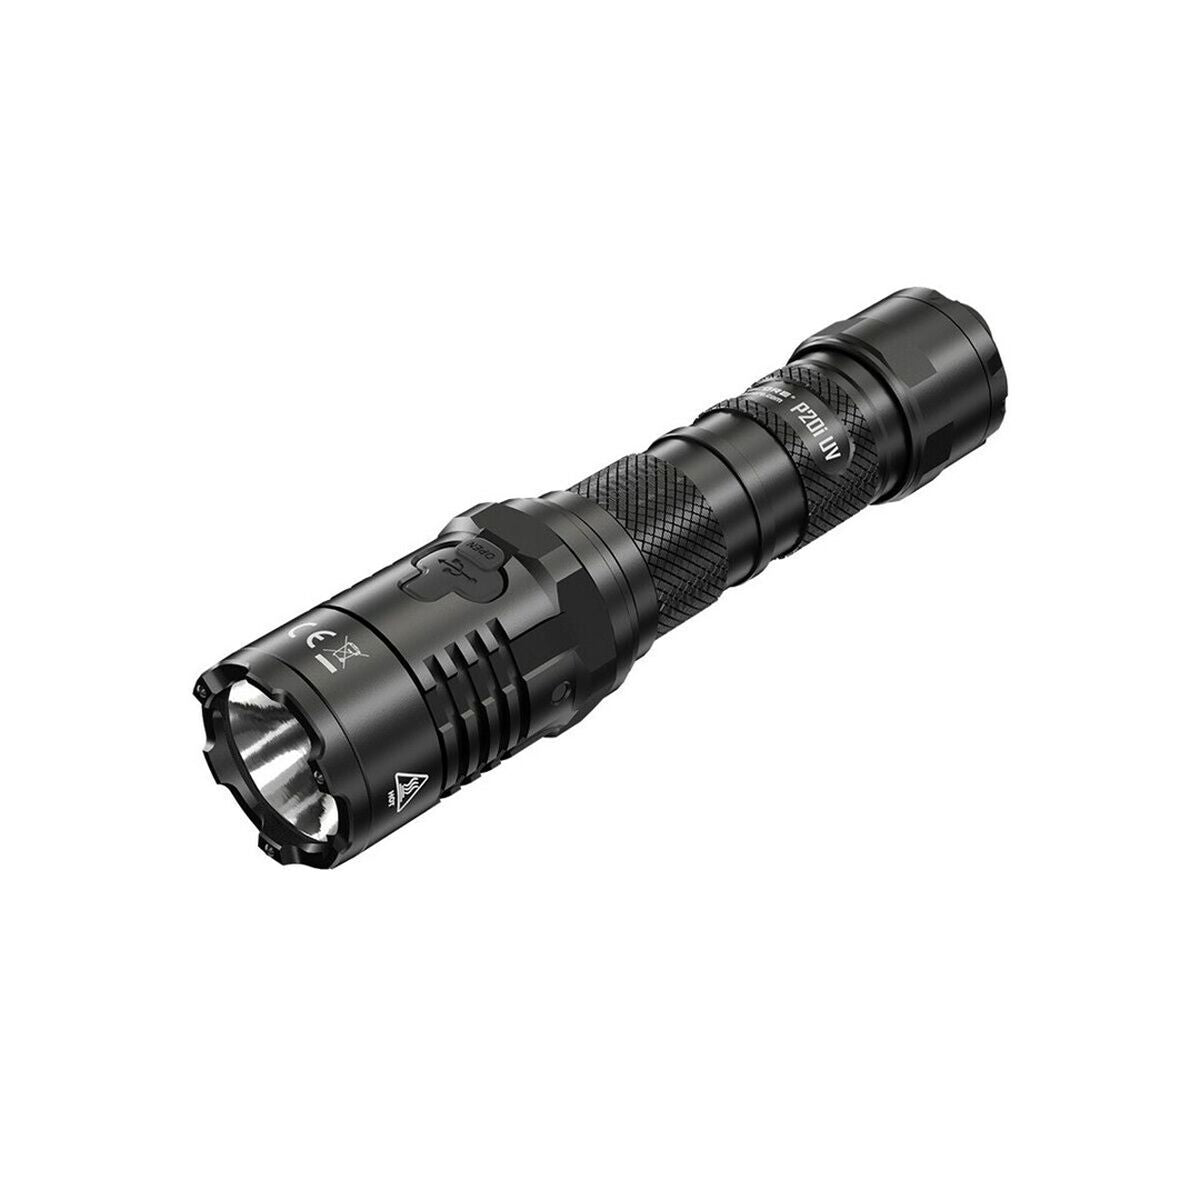 Lanterna LED Nitecore NT-P20I-UV 40 W 1 Peça 1800 Lm